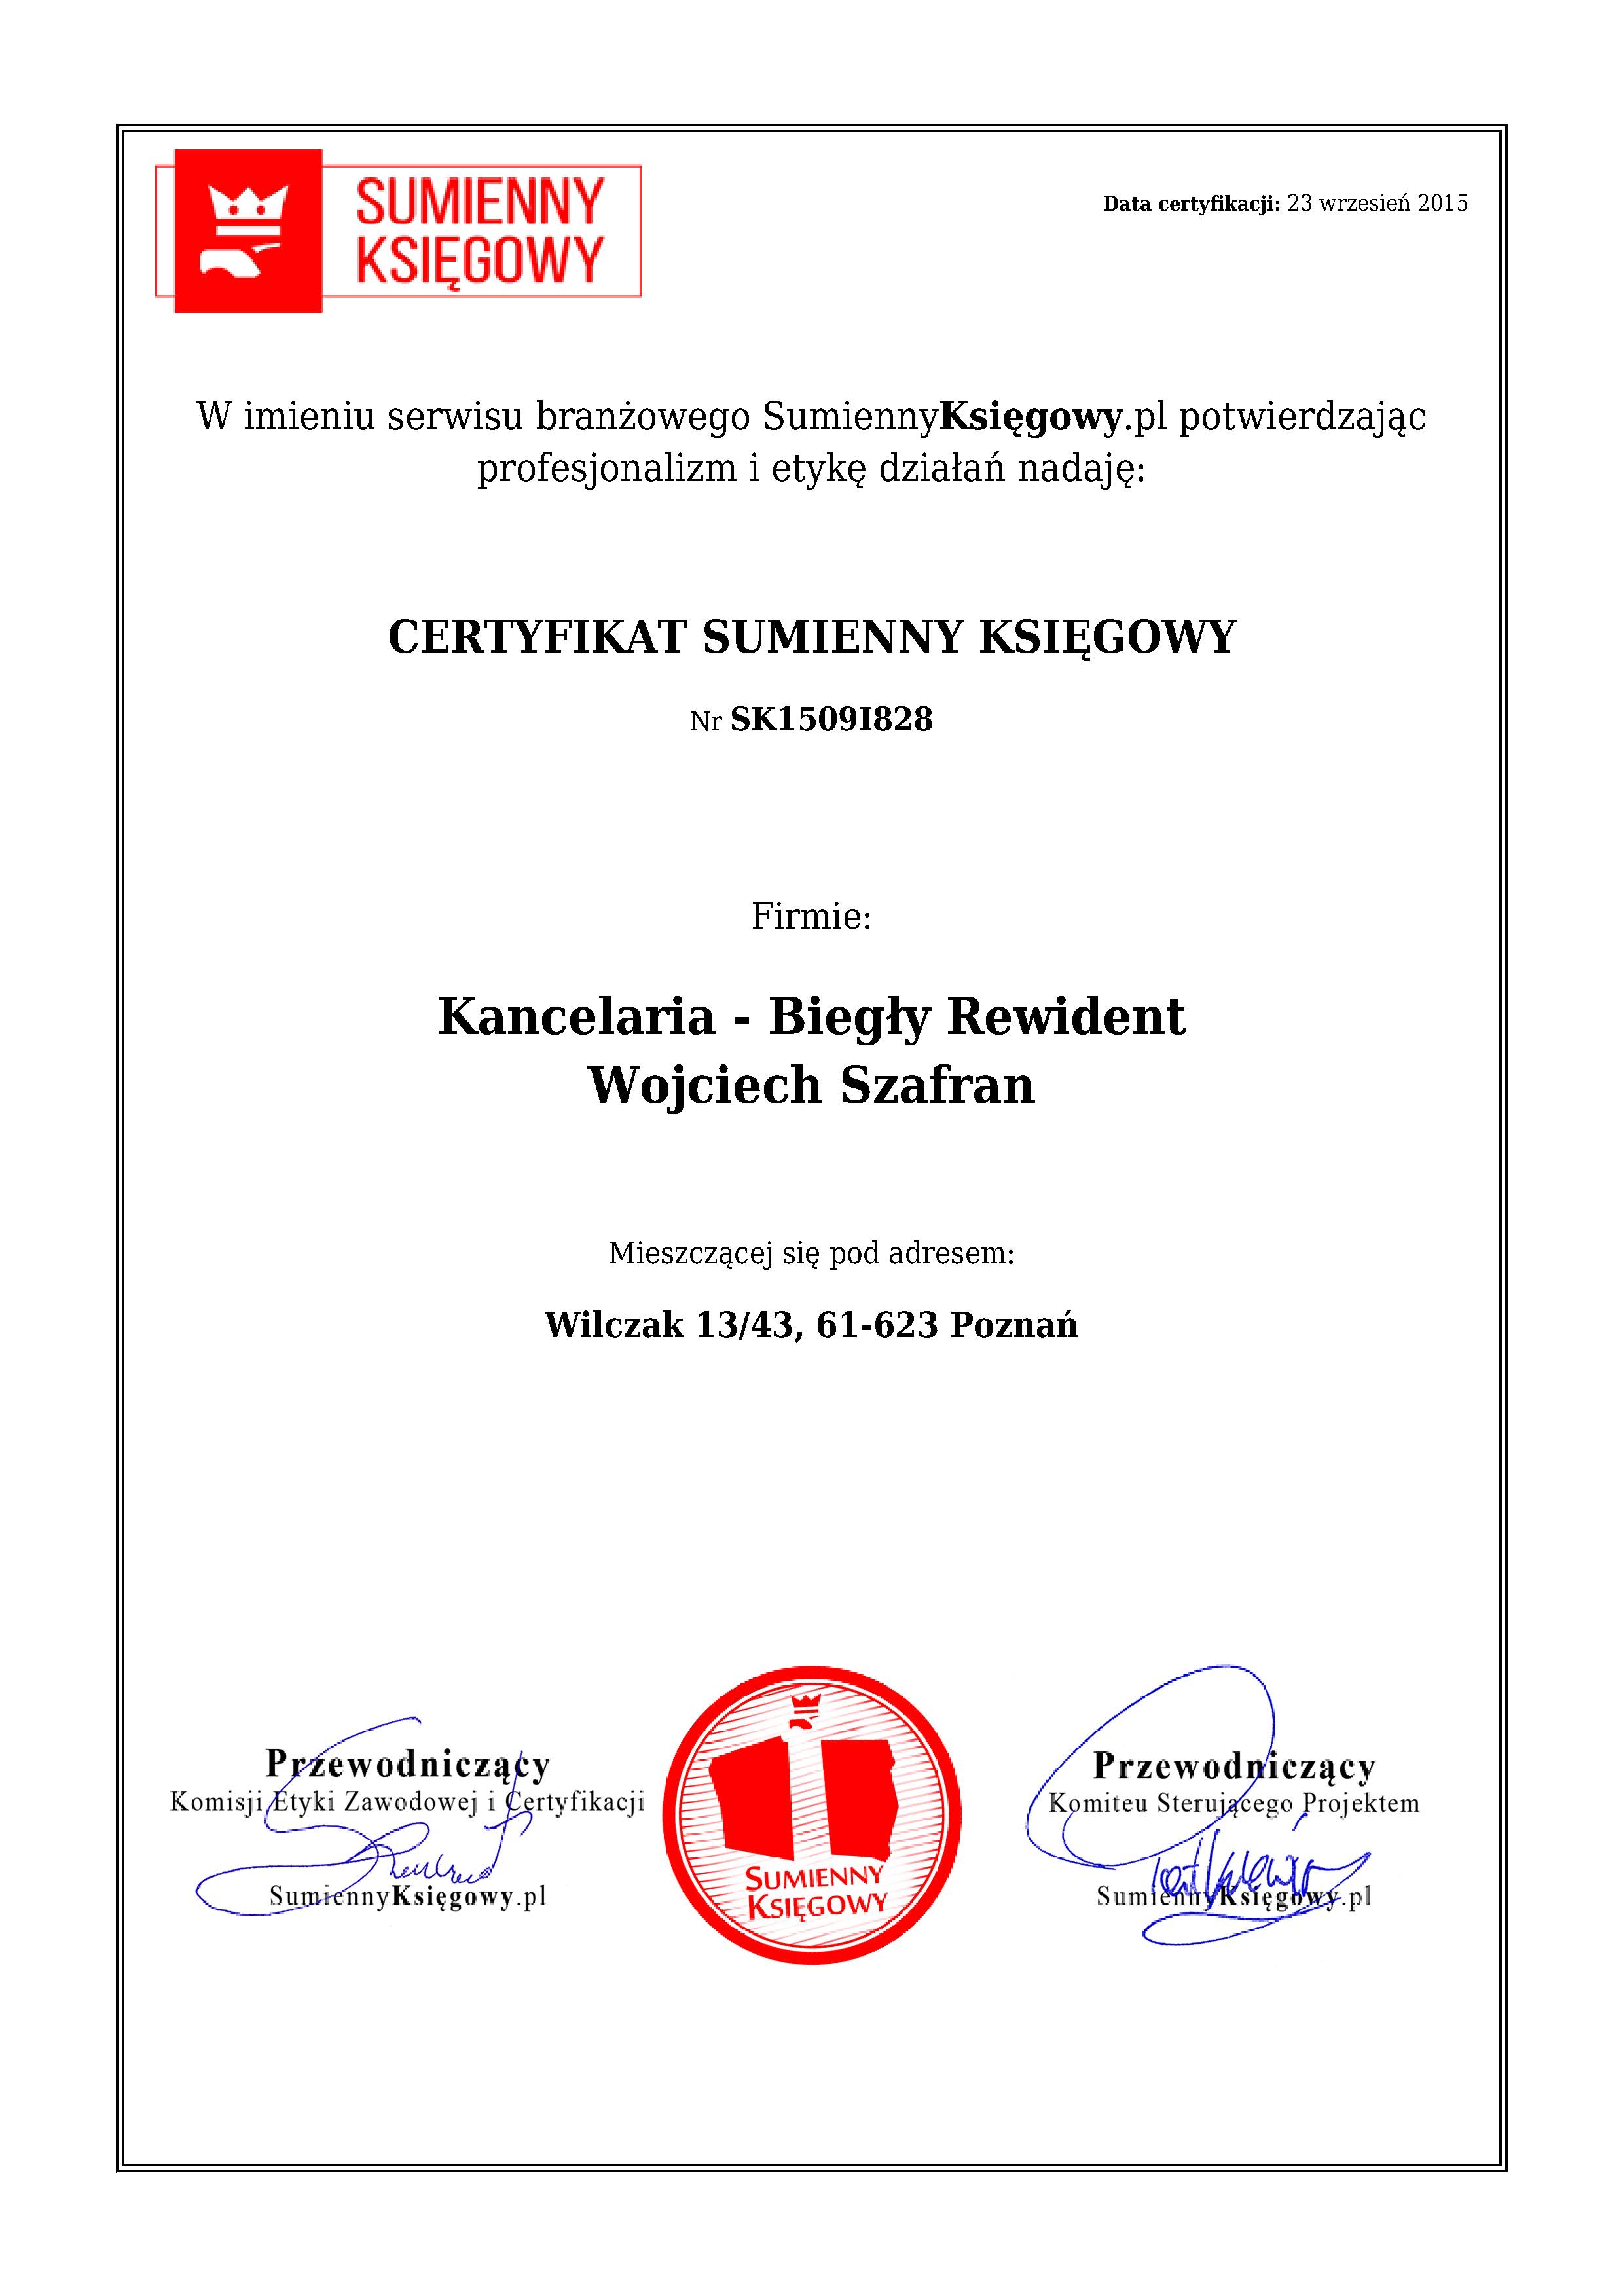 Kancelaria - Biegły Rewident Wojciech Szafran certyfikat 1